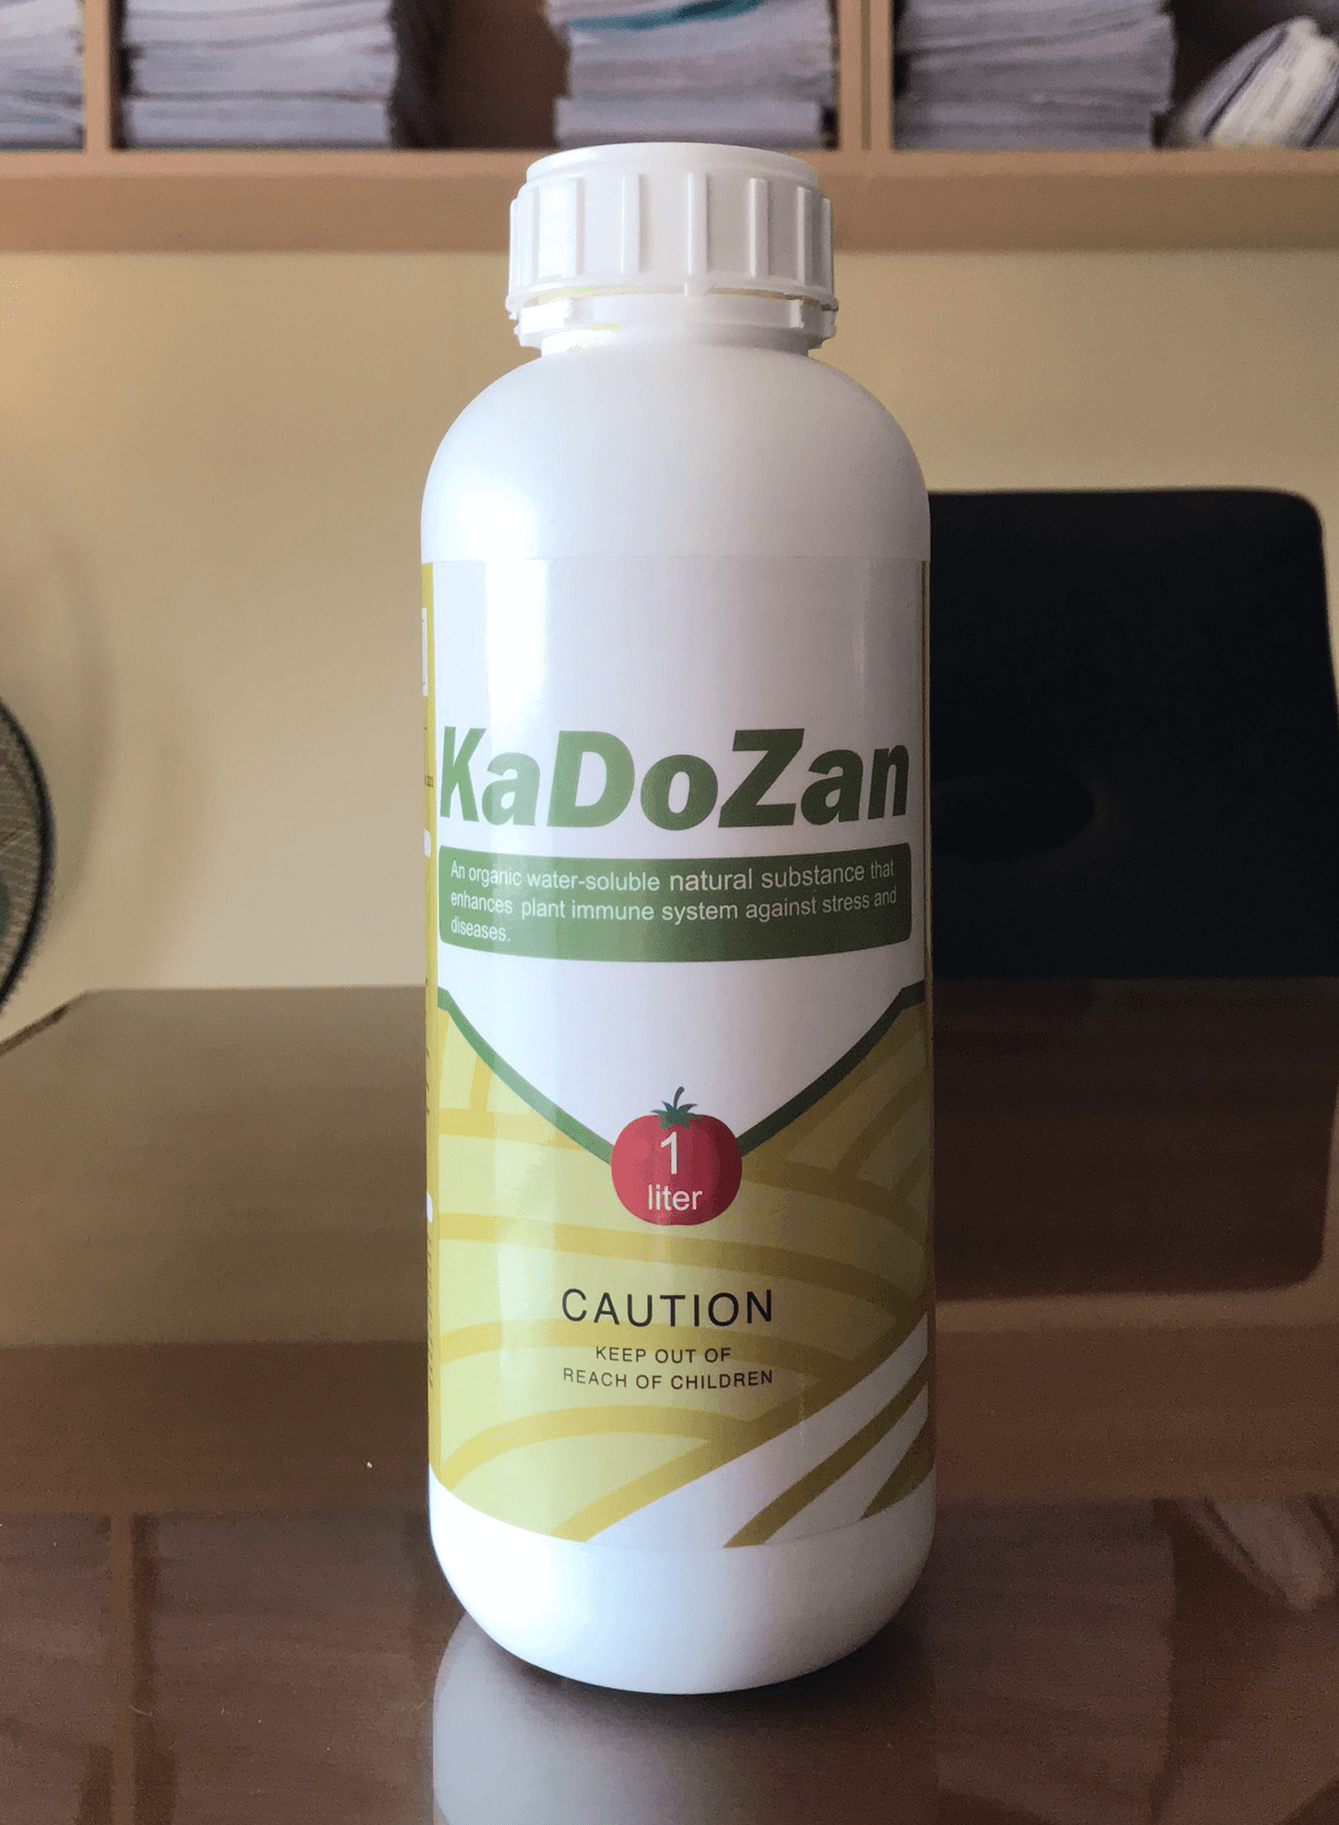 Chế phẩm Kadozan hàm lượng Chitosan 2%